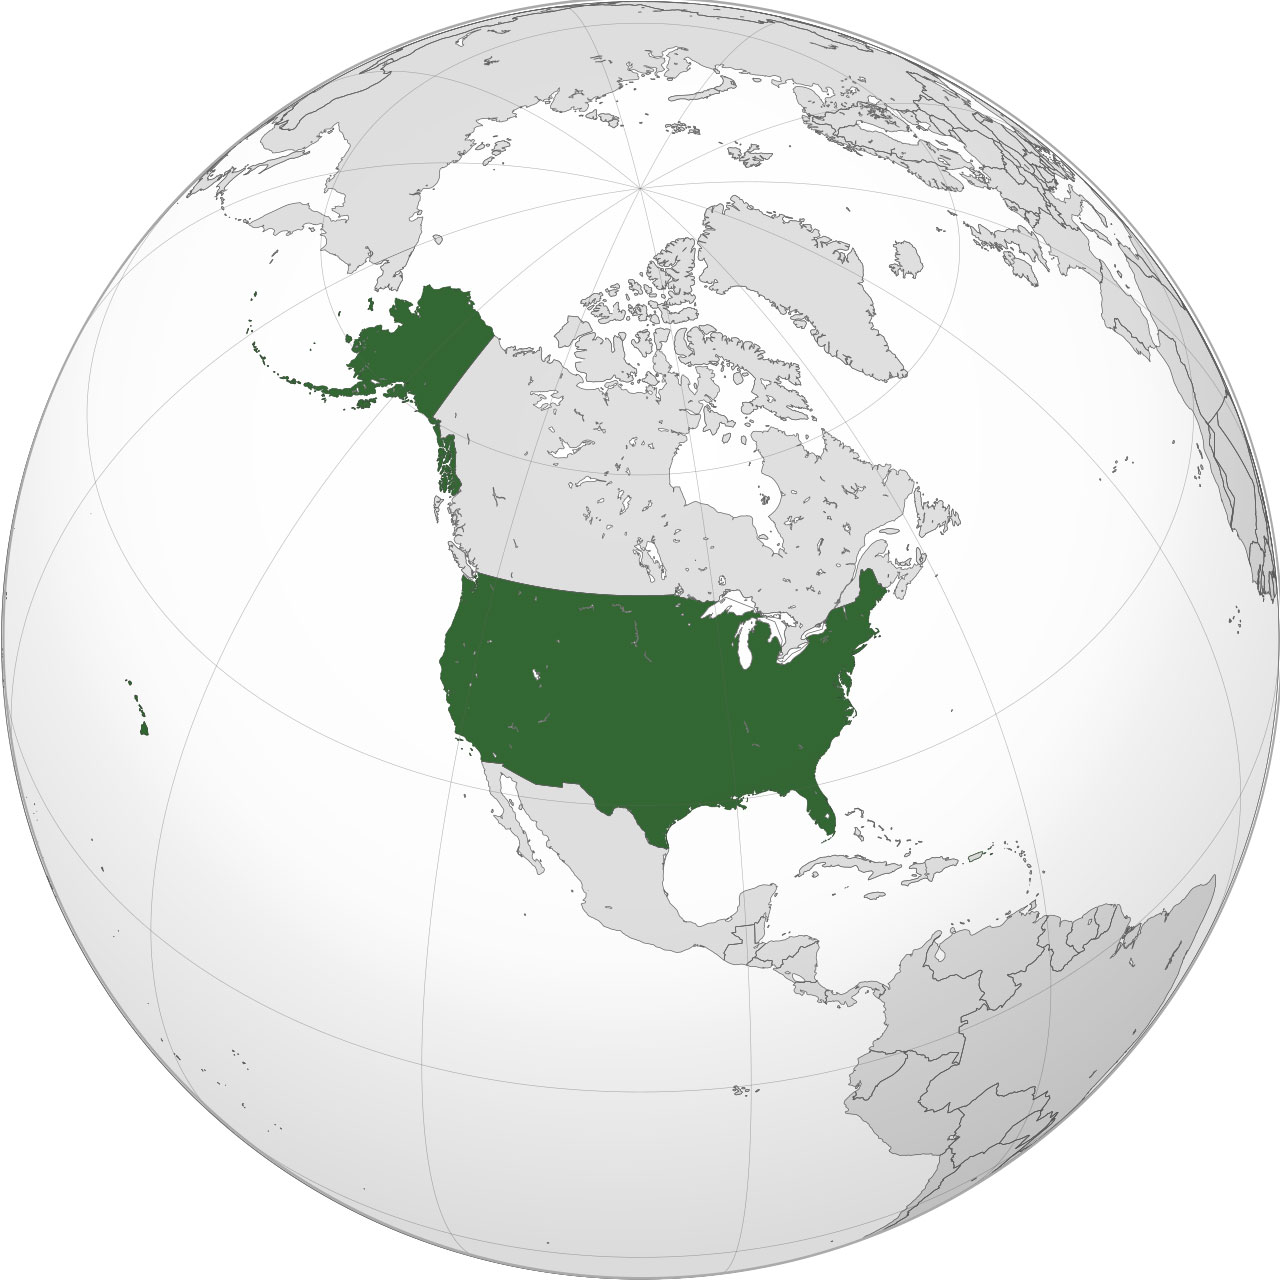 지구본에서 미국 위치 표시한 이미지